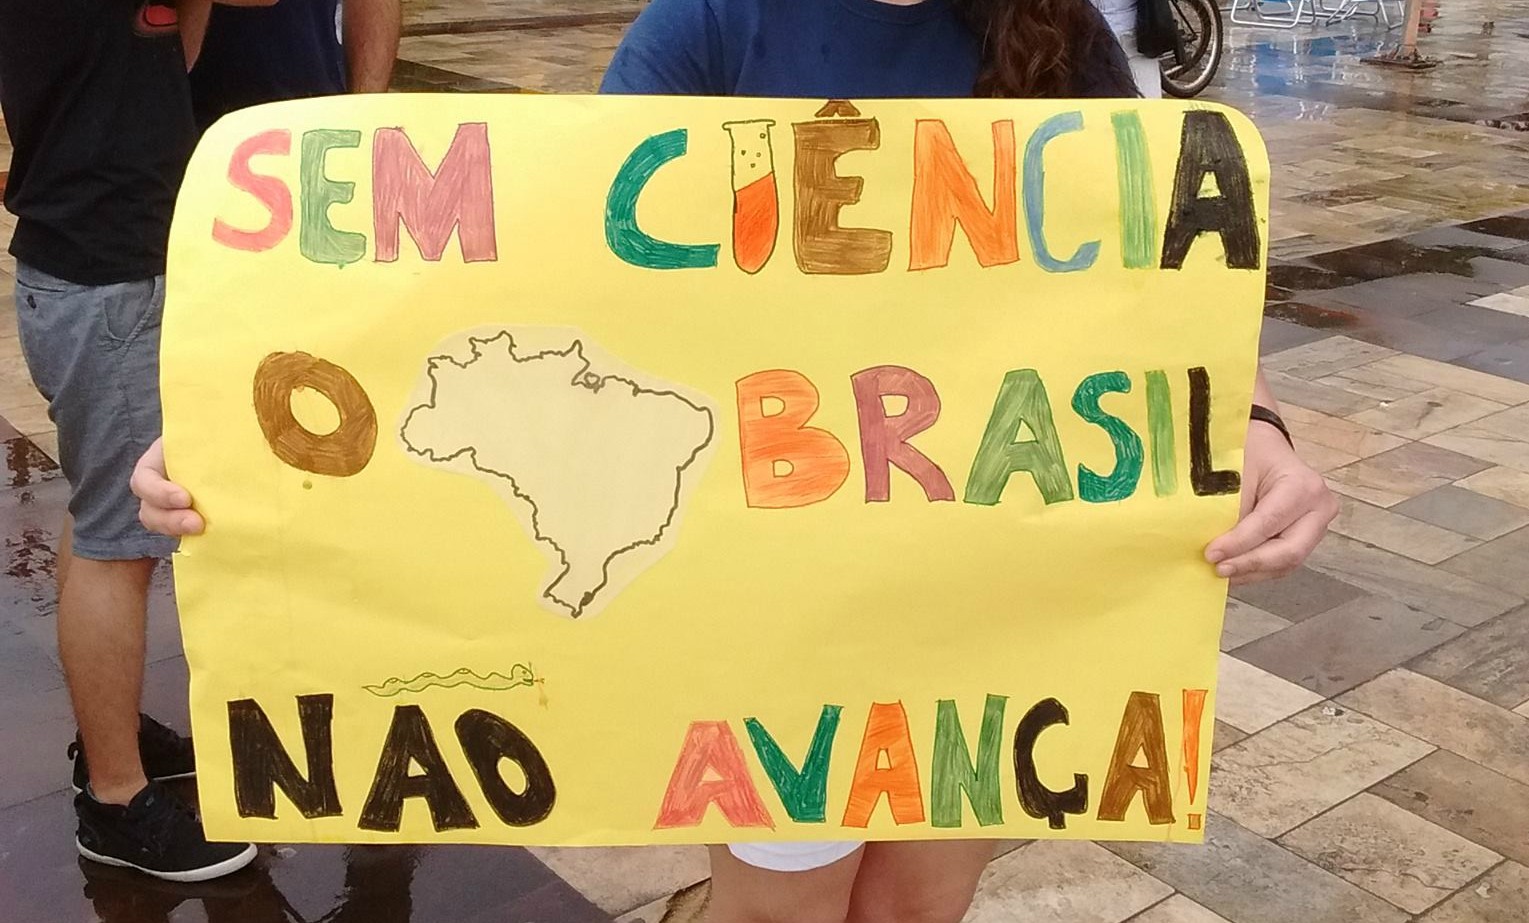   (Foto: Divulgação/Marcha pela ciência)